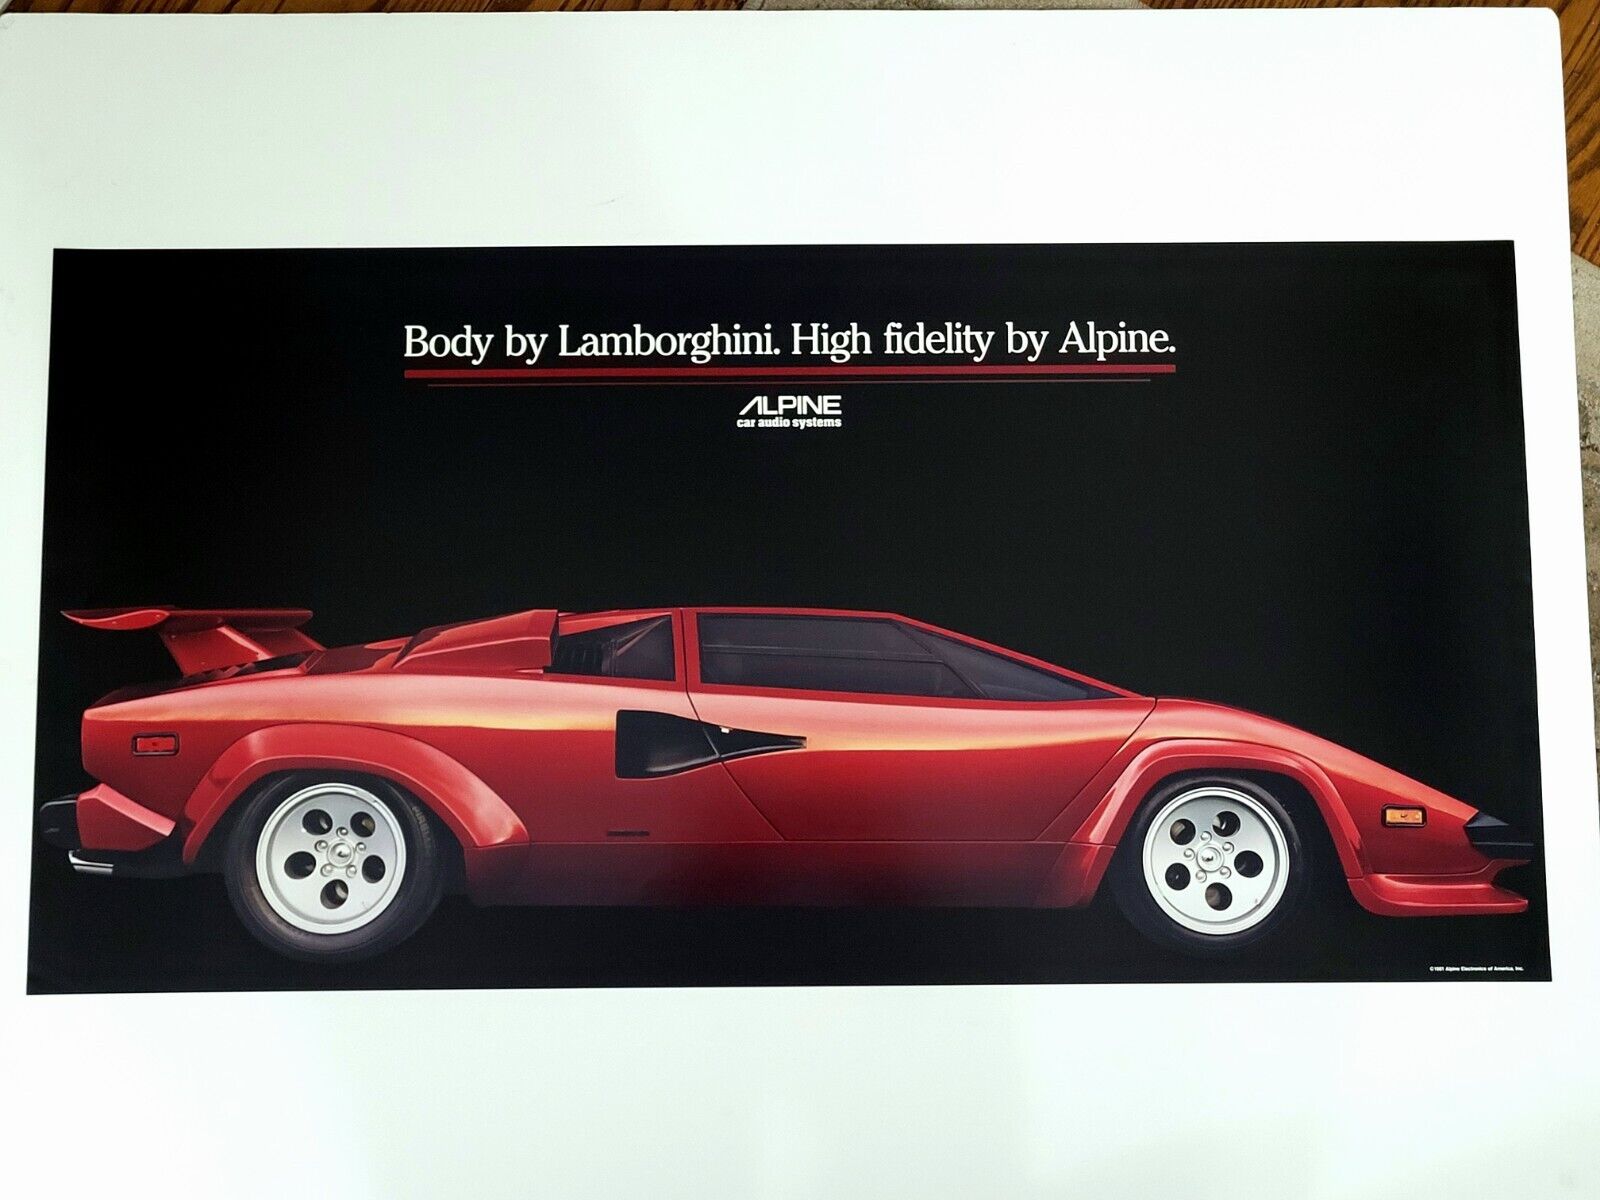 Vintage 1981 Lamborghini Alpine Car Audio Systems Advertising Poster ORIGINAL 